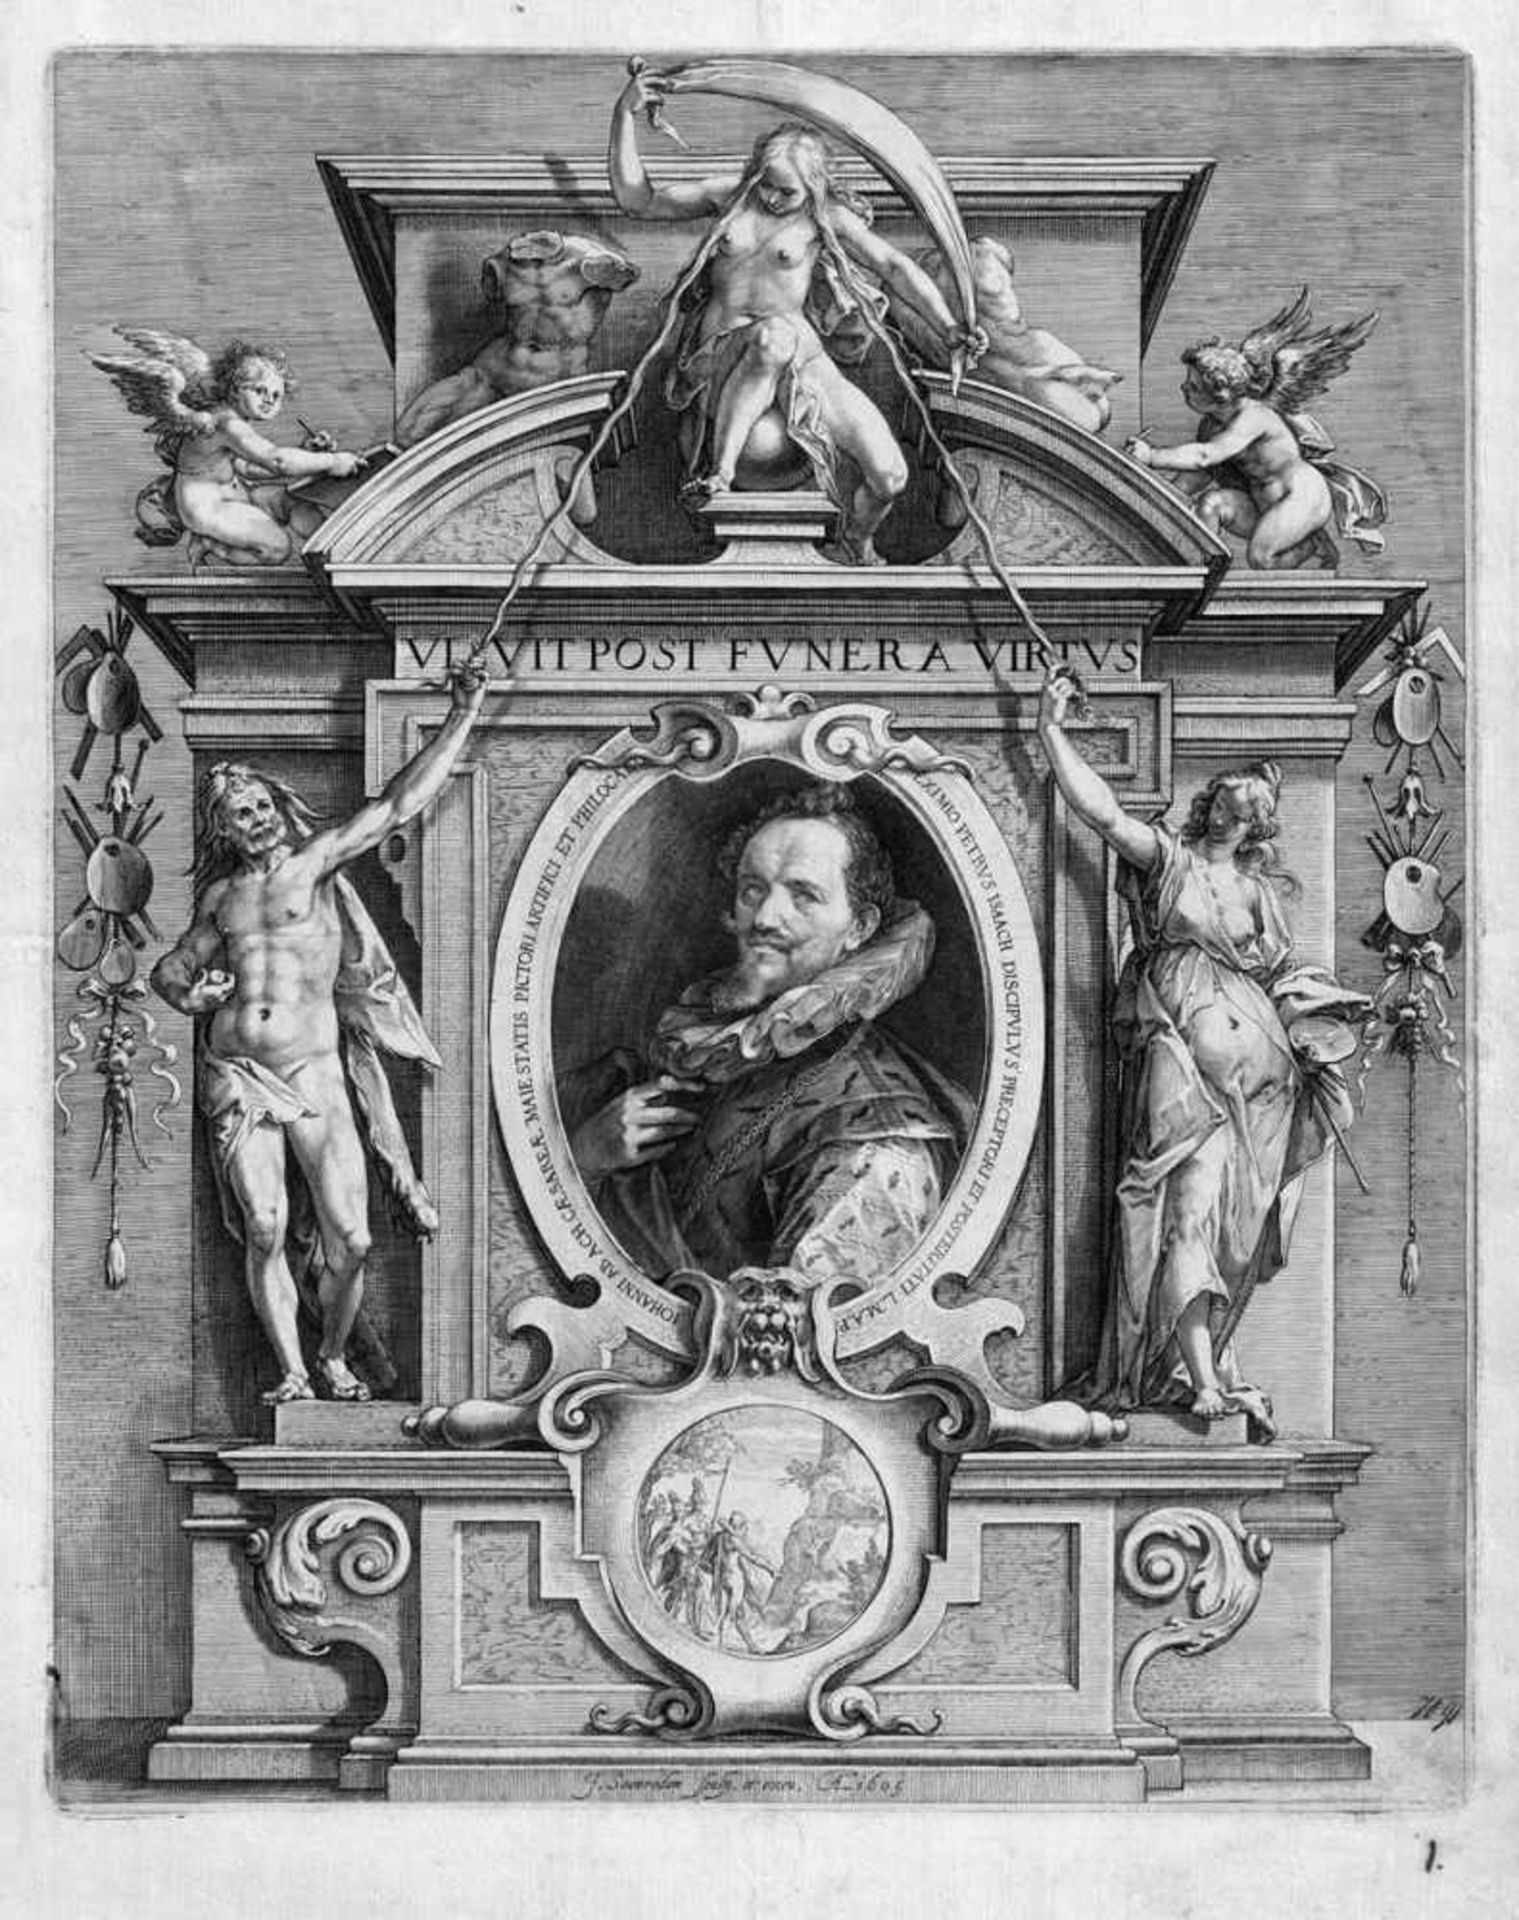 Saenredam, Jan: Bildnis des Hans von Aachen in allegorischem RahmenwerkBildnis des Hans von Aachen